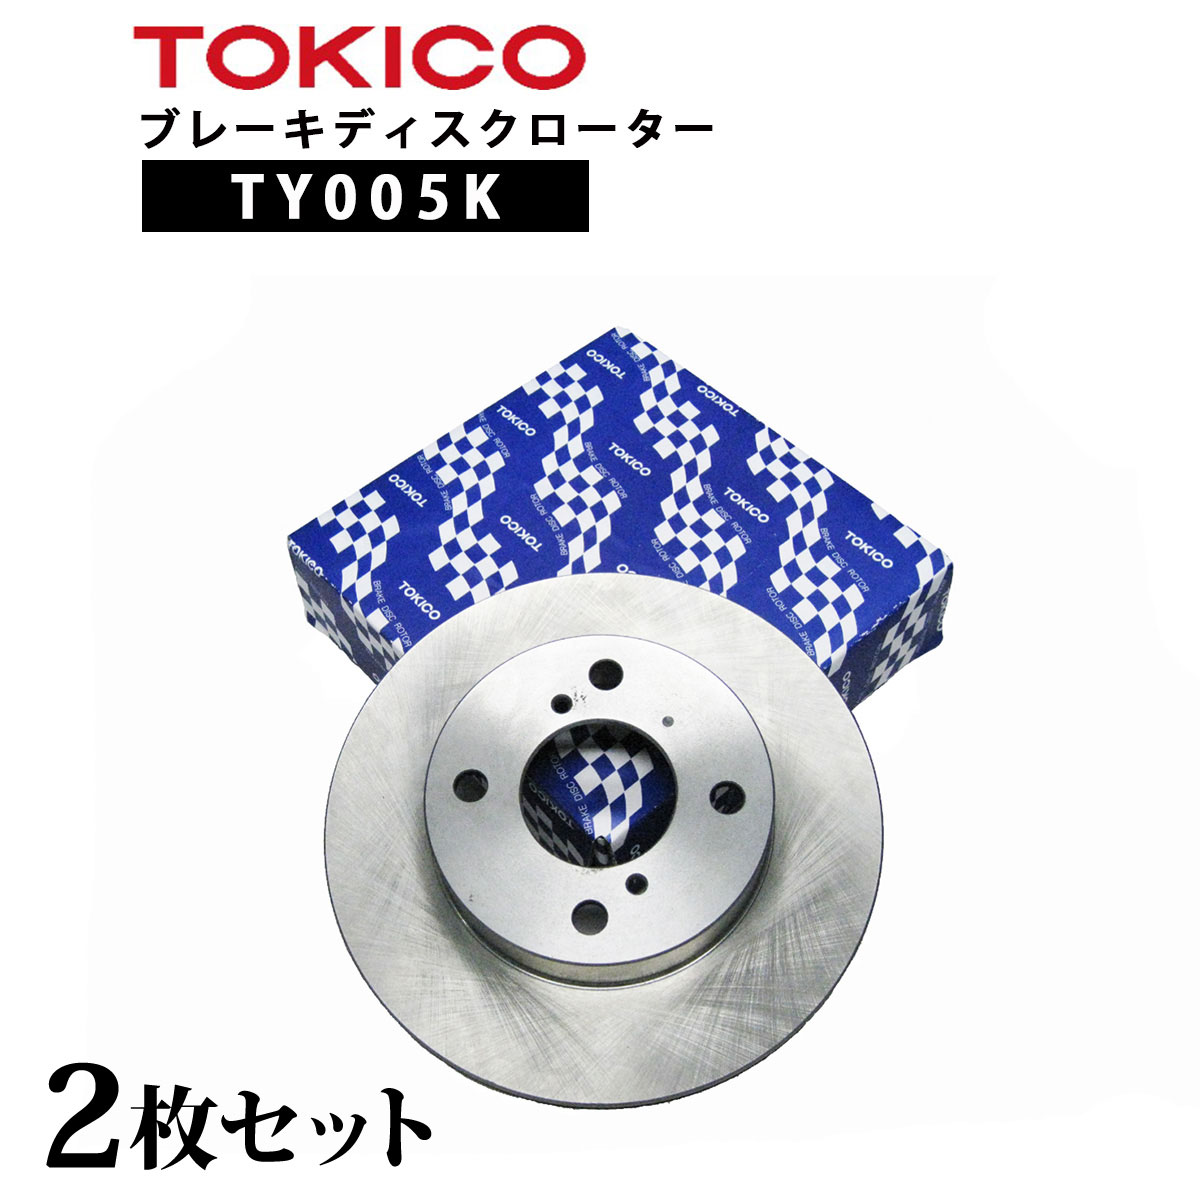 TY005K TOKICO ブレーキディスクローター フロント 2枚 左右セット トキコ 日立| 適合 純正 三菱 MR249605 ミニキャブ F H42V,H47V 他社 BD6905 RM106 E6003 C6-021B D6F390J